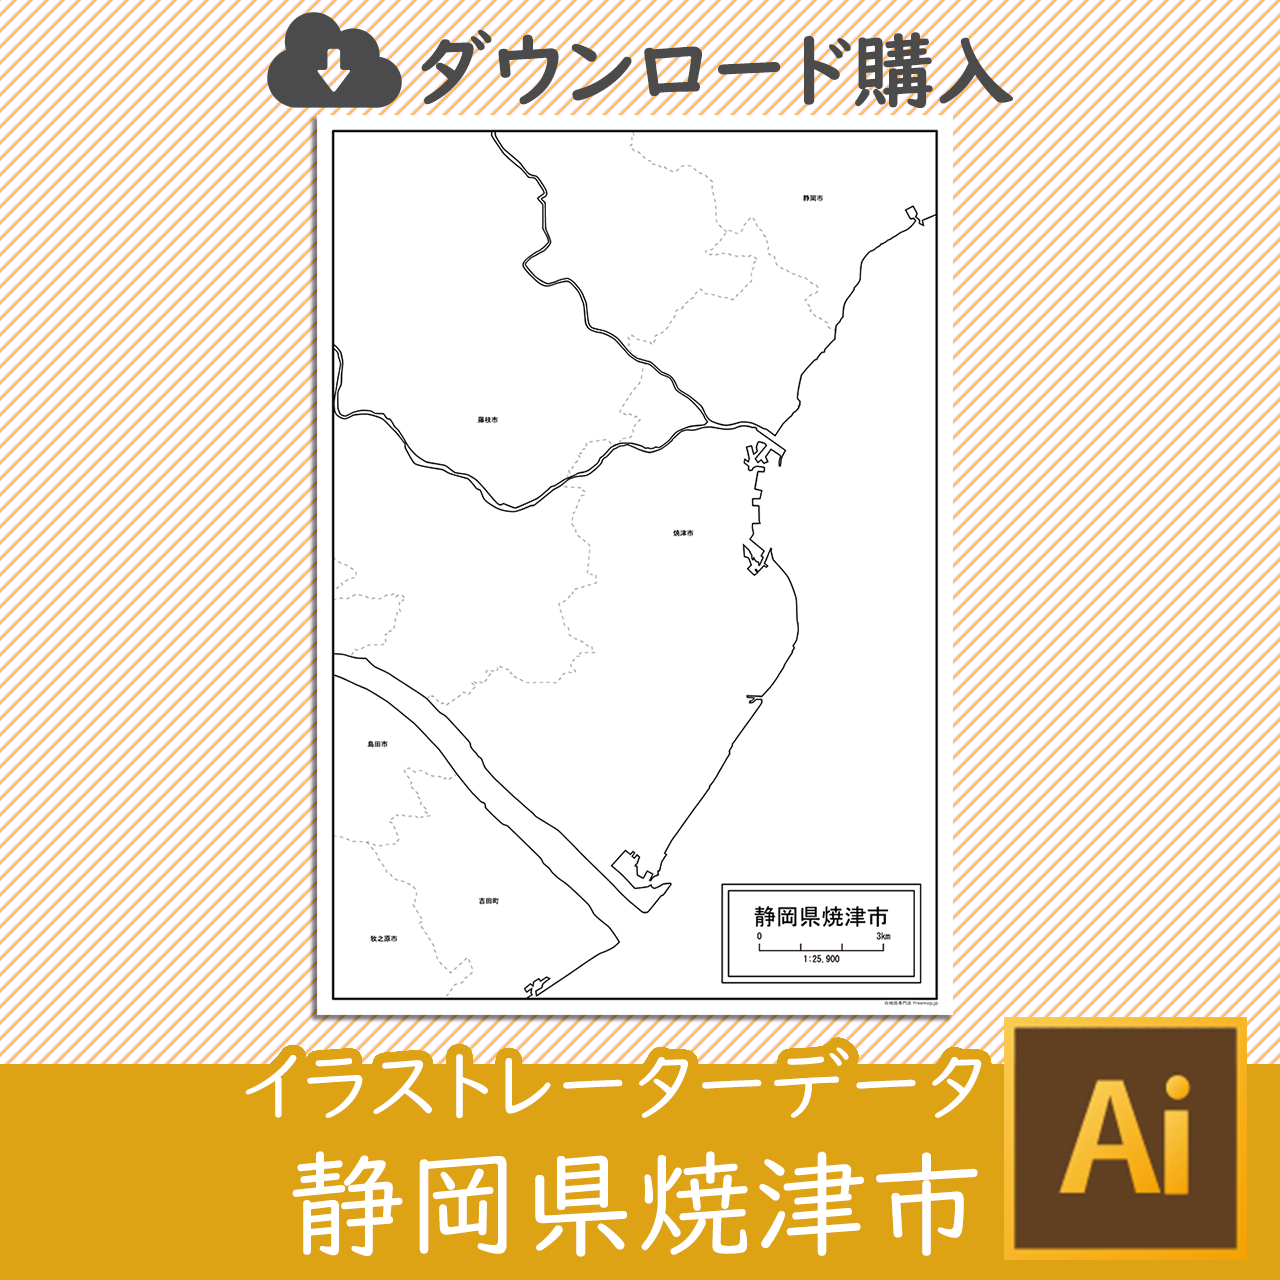 焼津市の白地図のサムネイル